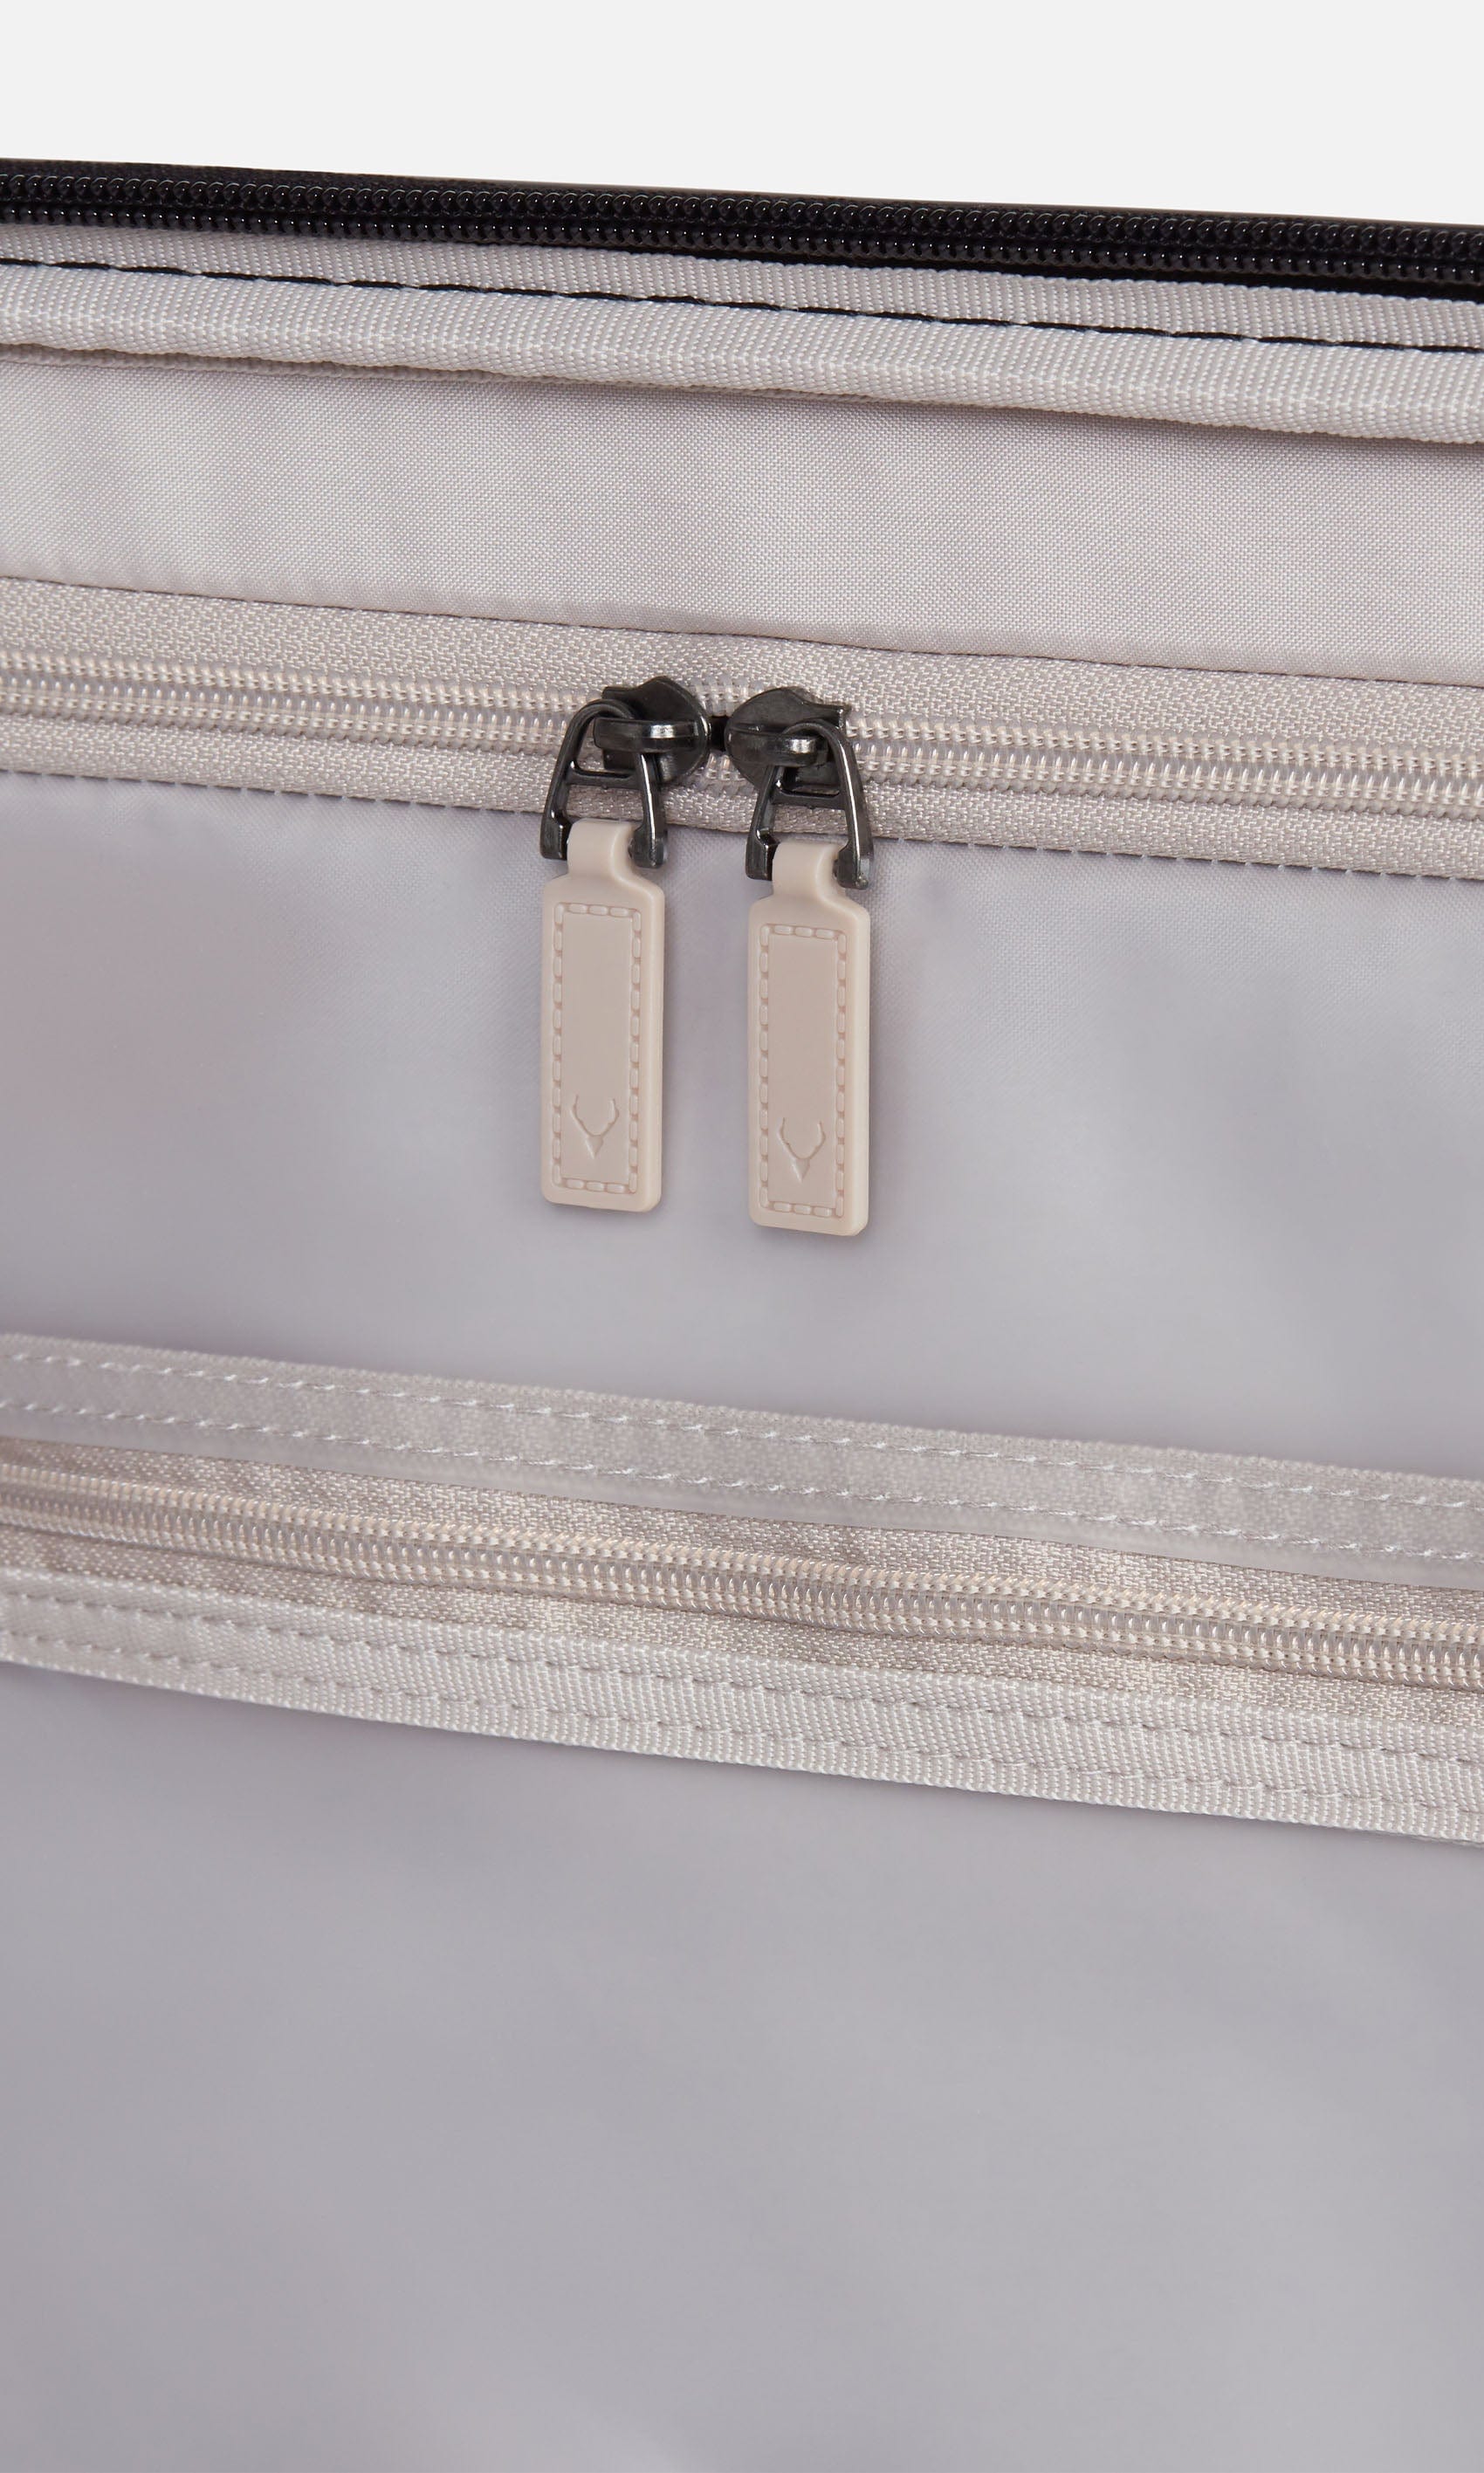 Antler Luggage -  Clifton set in taupe - Hard Suitcases Clifton Set of 3 Suitcases Taupe (Beige) | Hard Suitcase | Antler UK